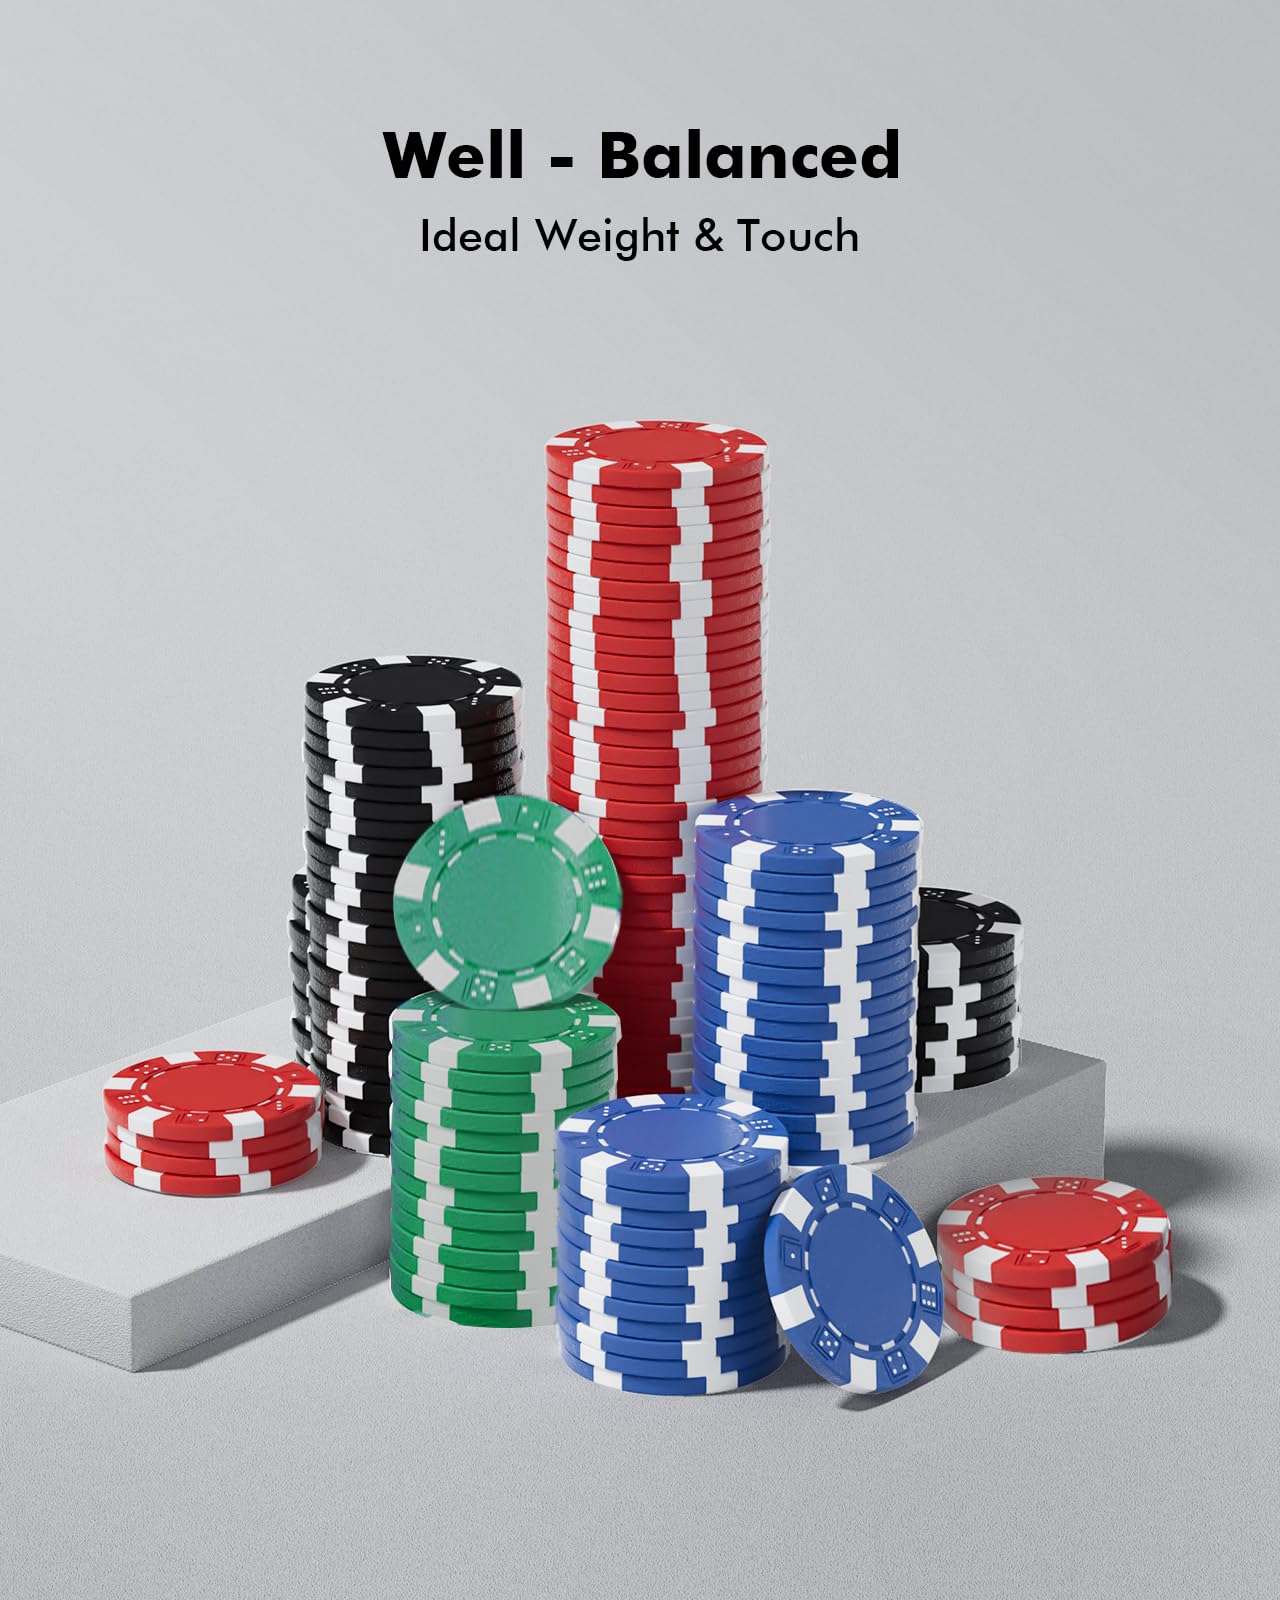 HEITOK Poker Chip Set 200 PCS for Beginners, Casino Poker Chips with Aluminum Case, 11.5 Gram Chips with Iron Insert for Texas Hold'em Blackjack Gambling